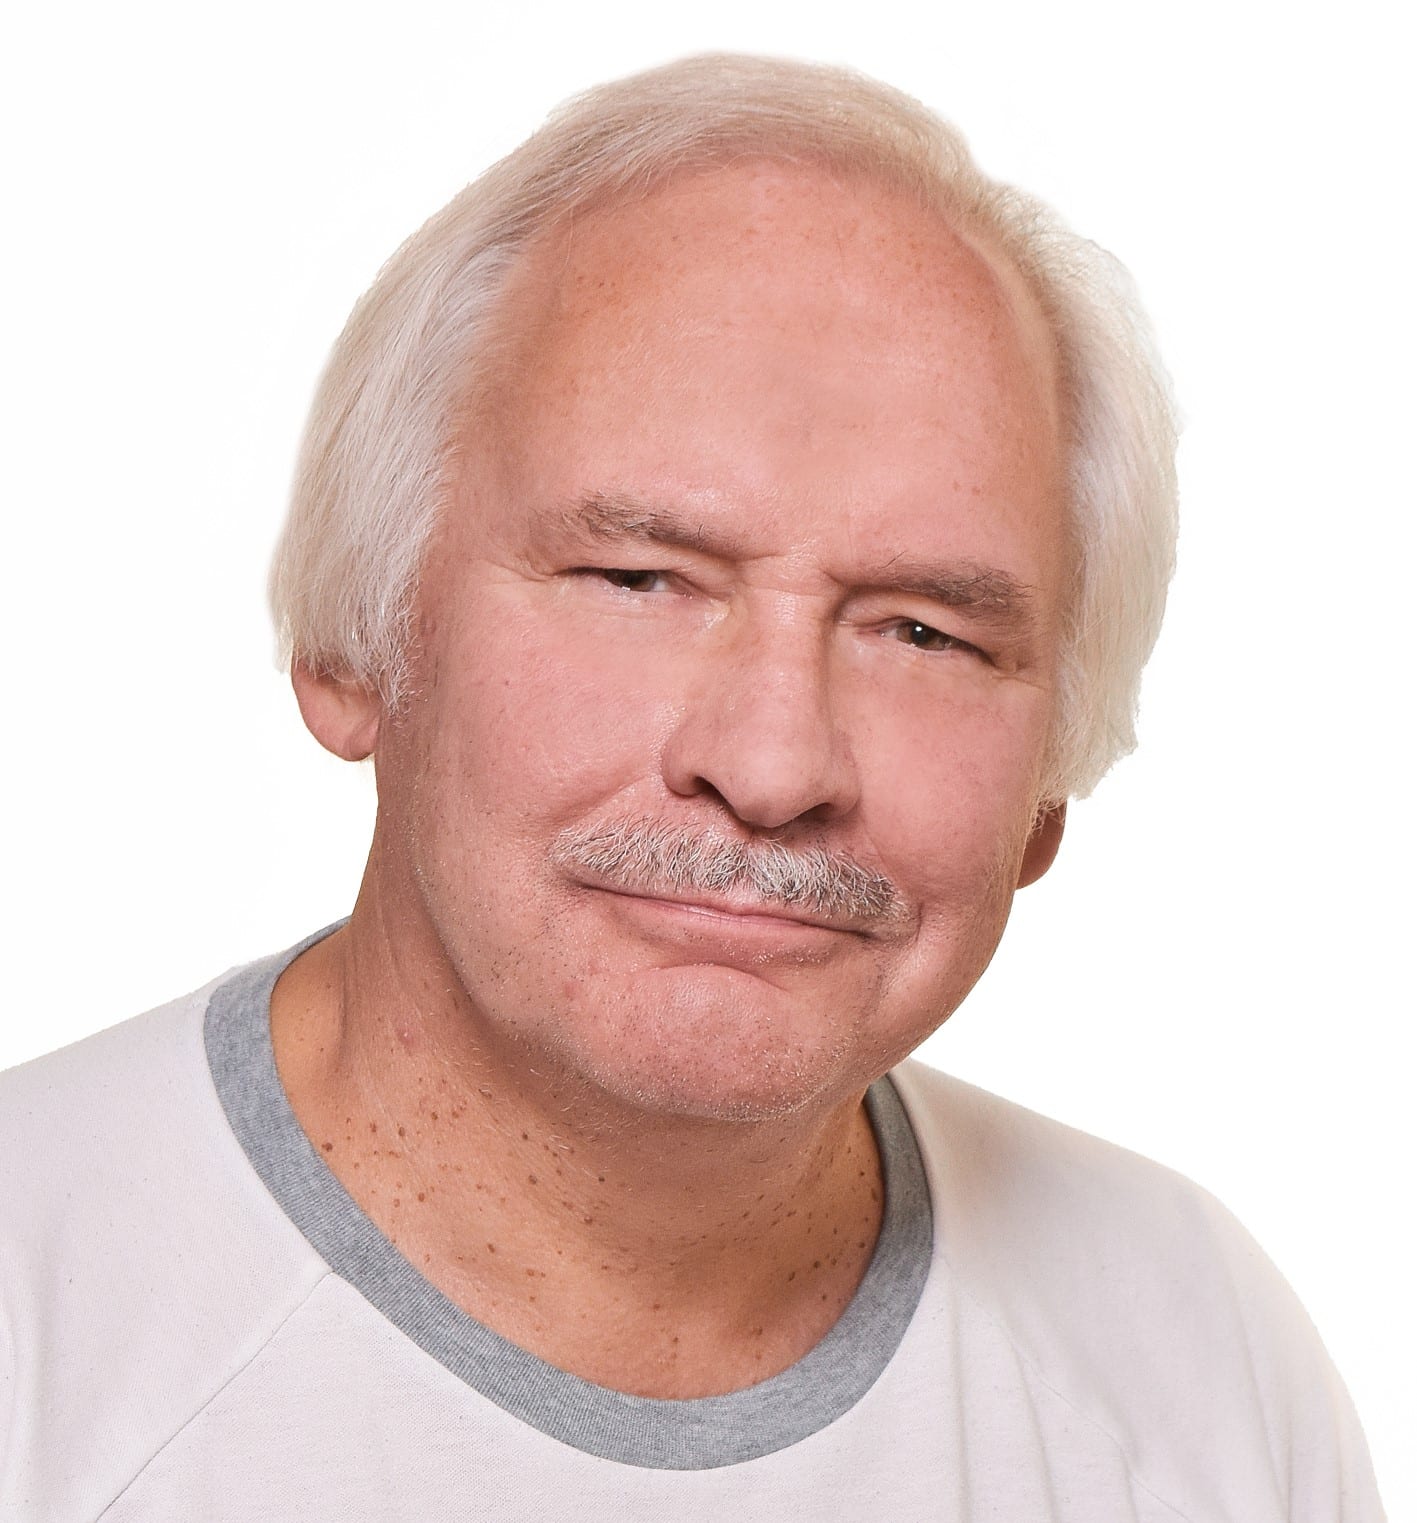 Kuvassa neurologian erikoislääkäri Hannu Laaksovirta (valkotukkainen mies, jolla viikset). ALS-tutkimus etsii taudin pysäyttävää lääkettä